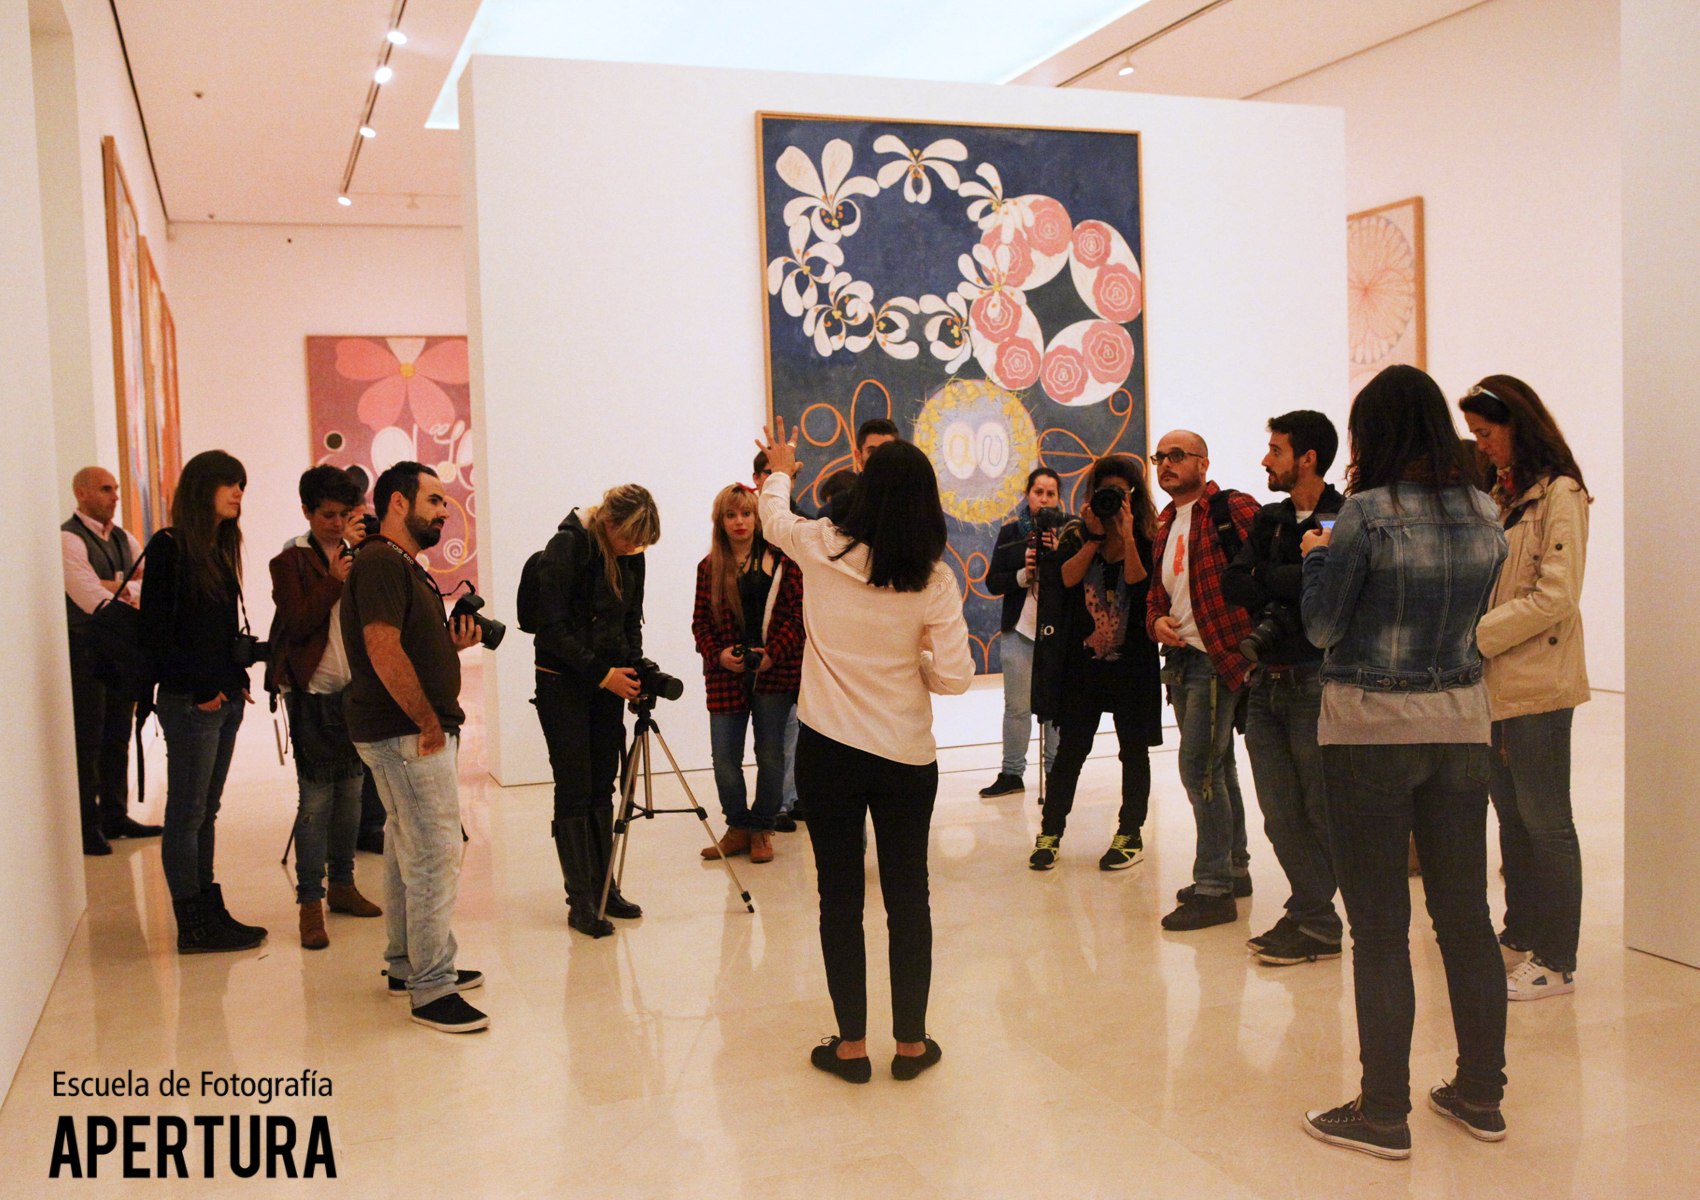 Apertura-aniversario Museo Picasso-Rosa G Illescas